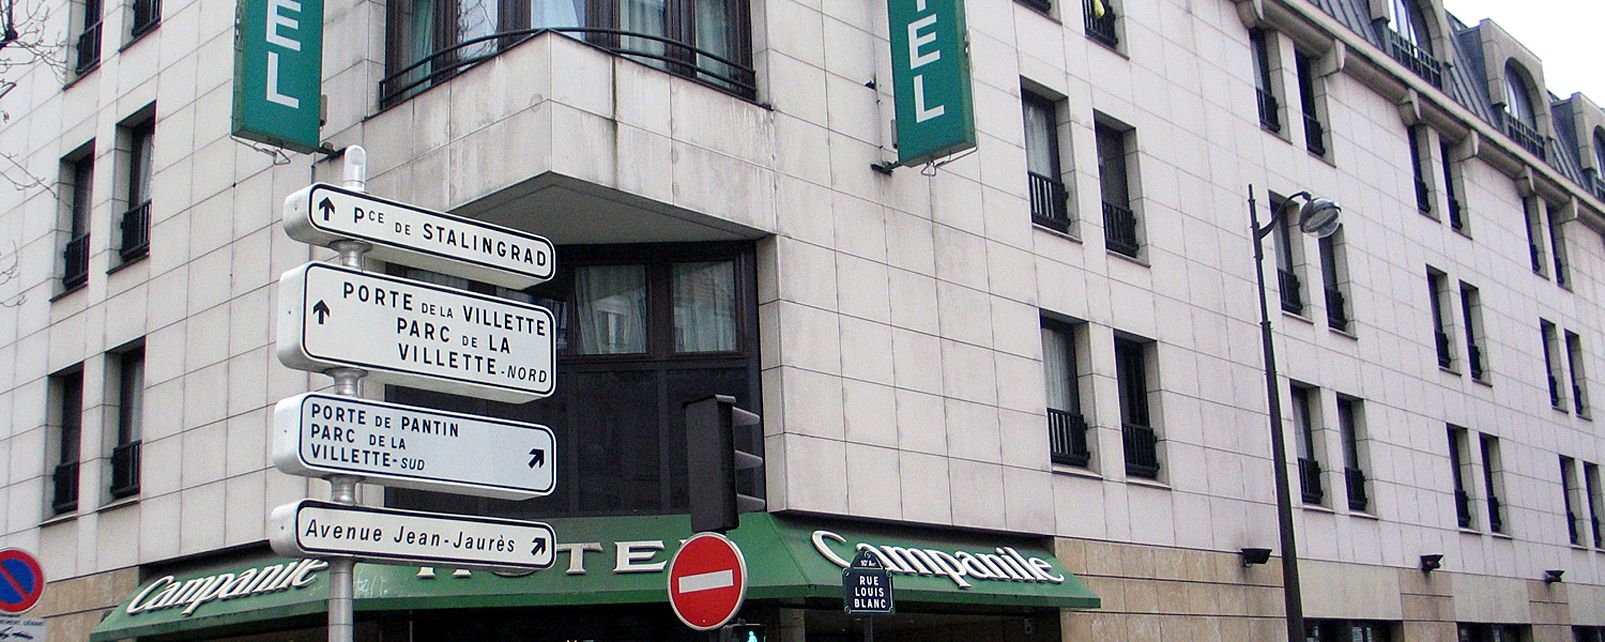 Hotel Campanile Gare du Nord